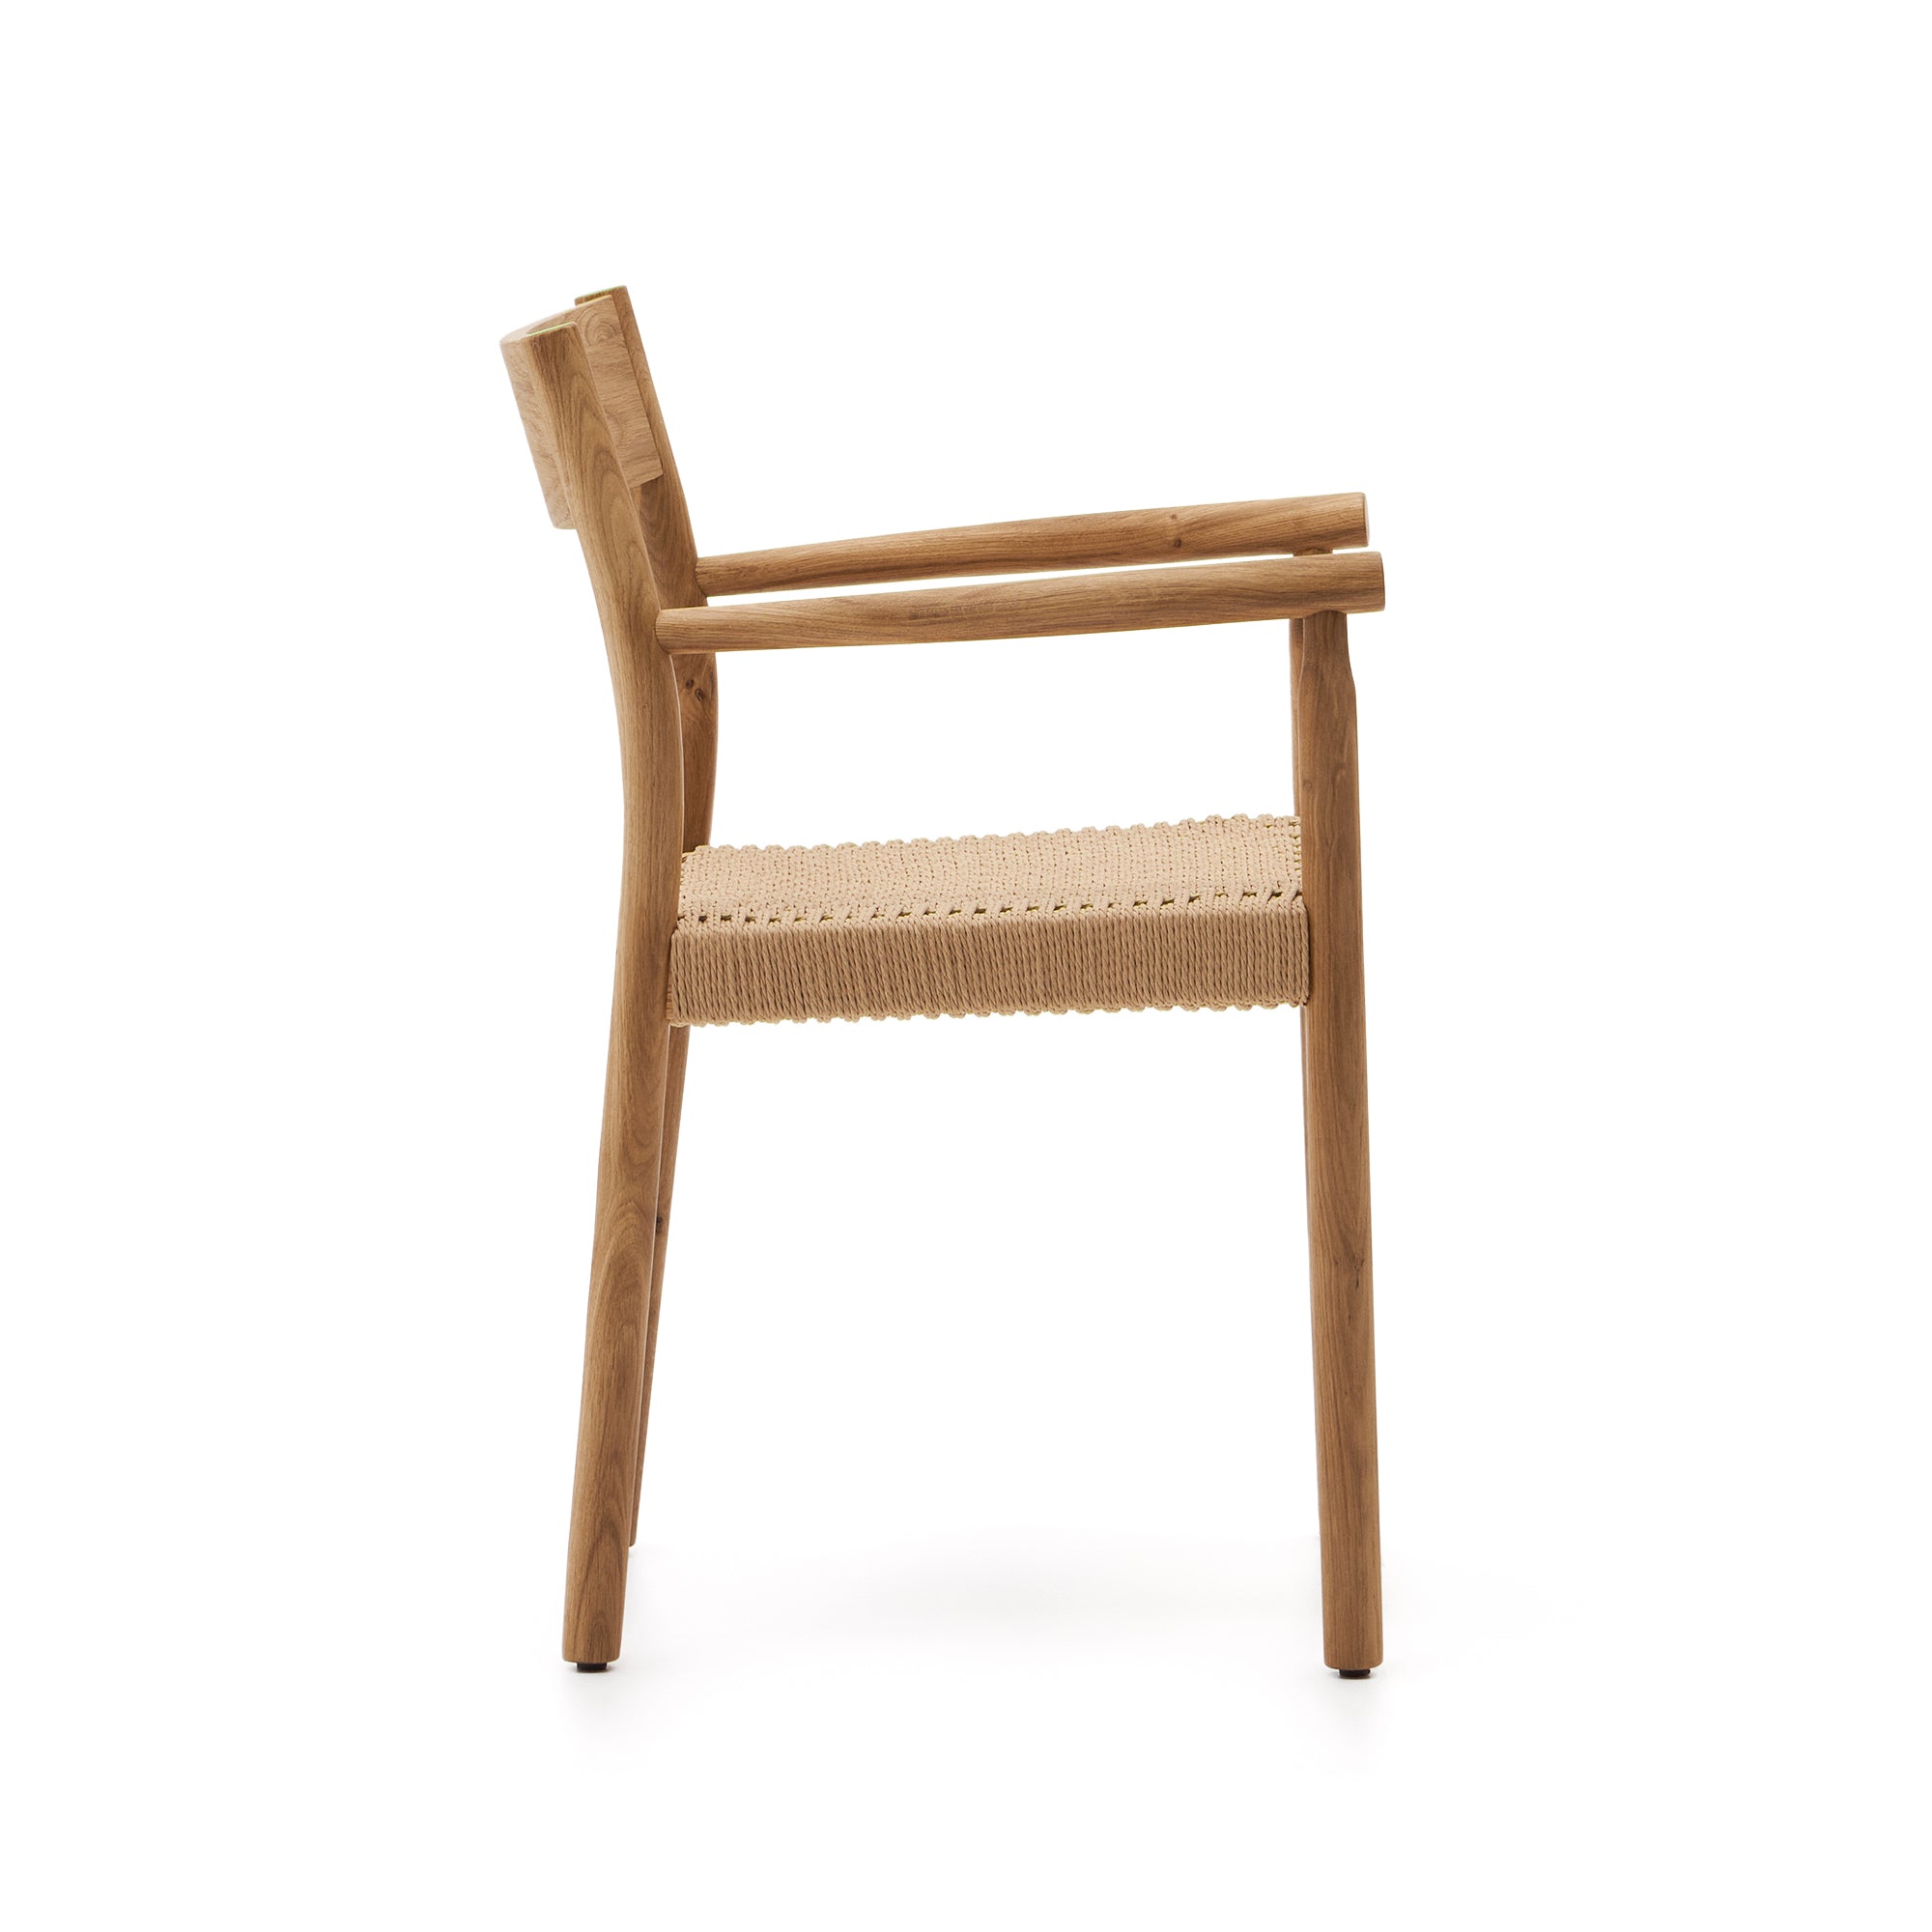 Yalia szék 100% FSC tömör tölgyfából, natúr kivitelben, kötél ülőfelülettel.